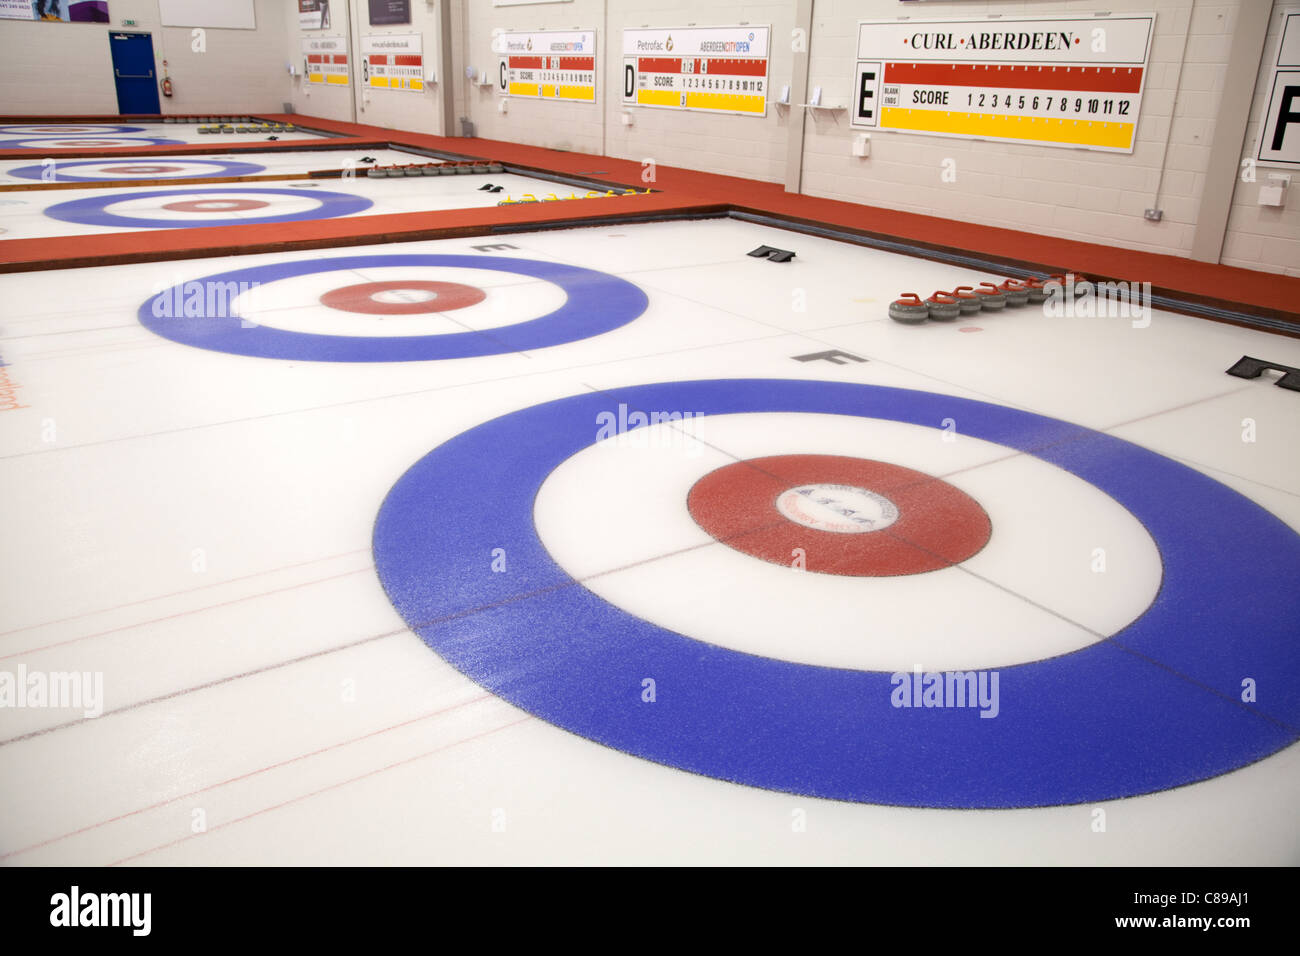 Indoor Curling Rink, Aberdeen Stock Photo